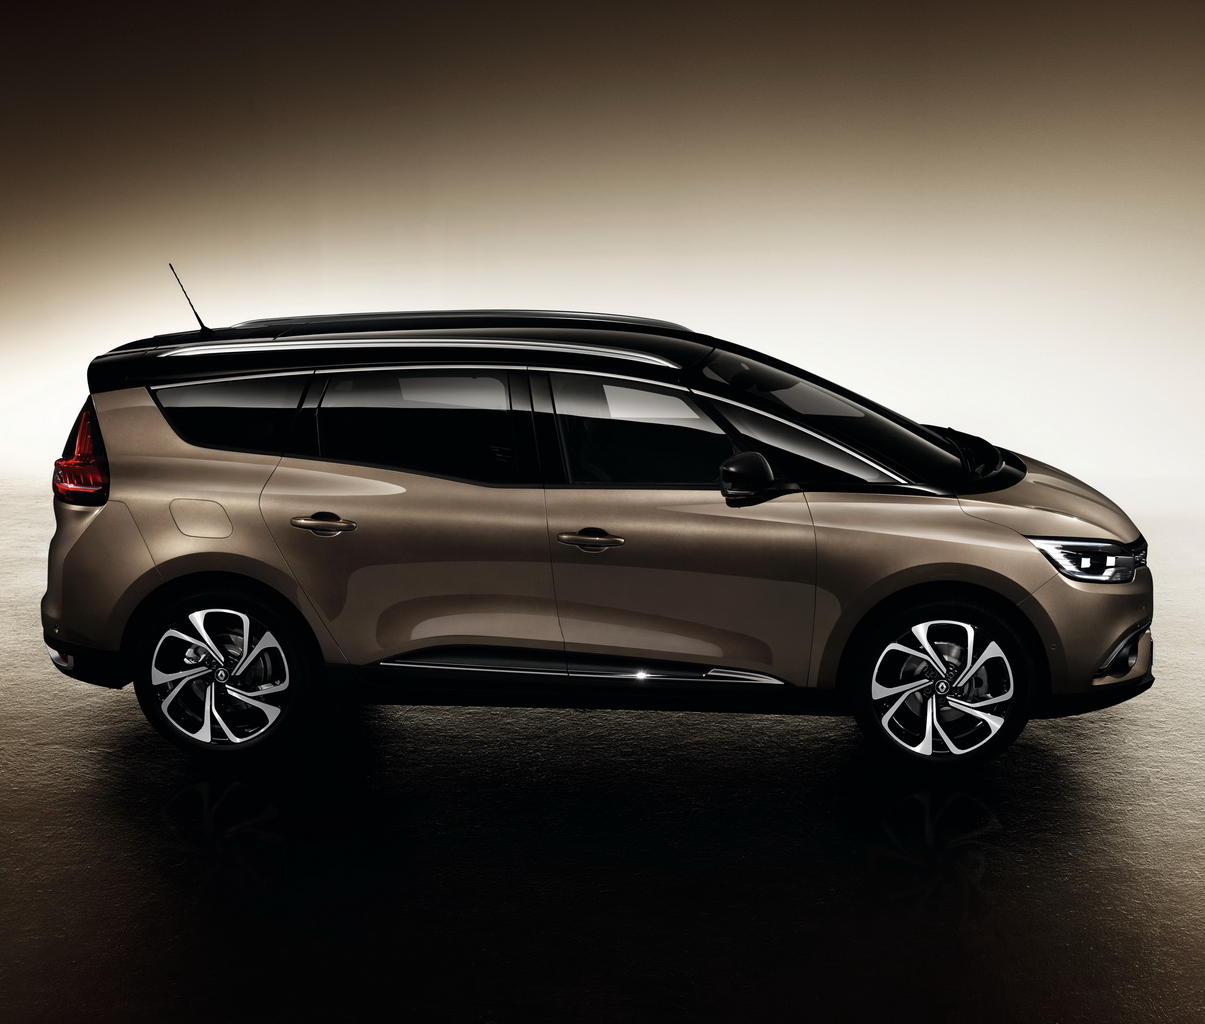 Представлен новый Renault Grand Scenic 2017 (цена, фото)